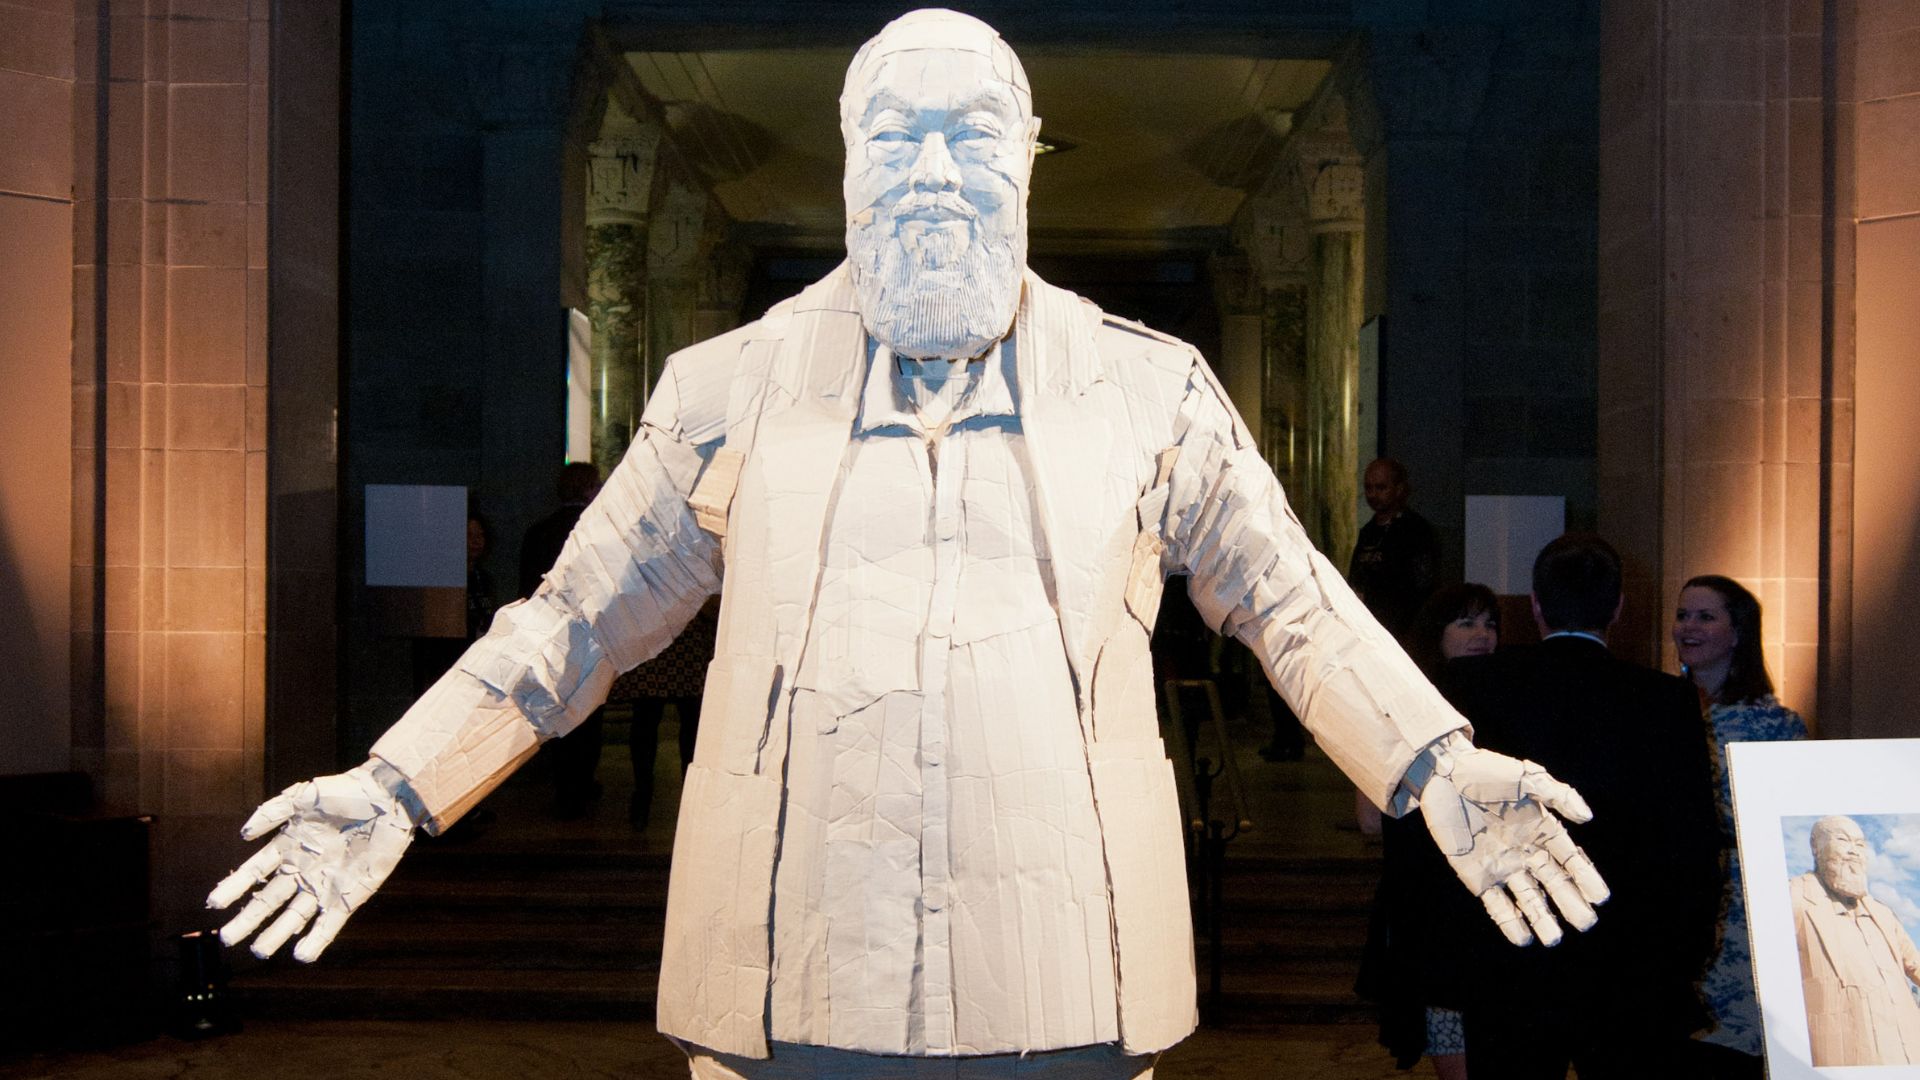 A sculpture depicting artist Ai Weiwei